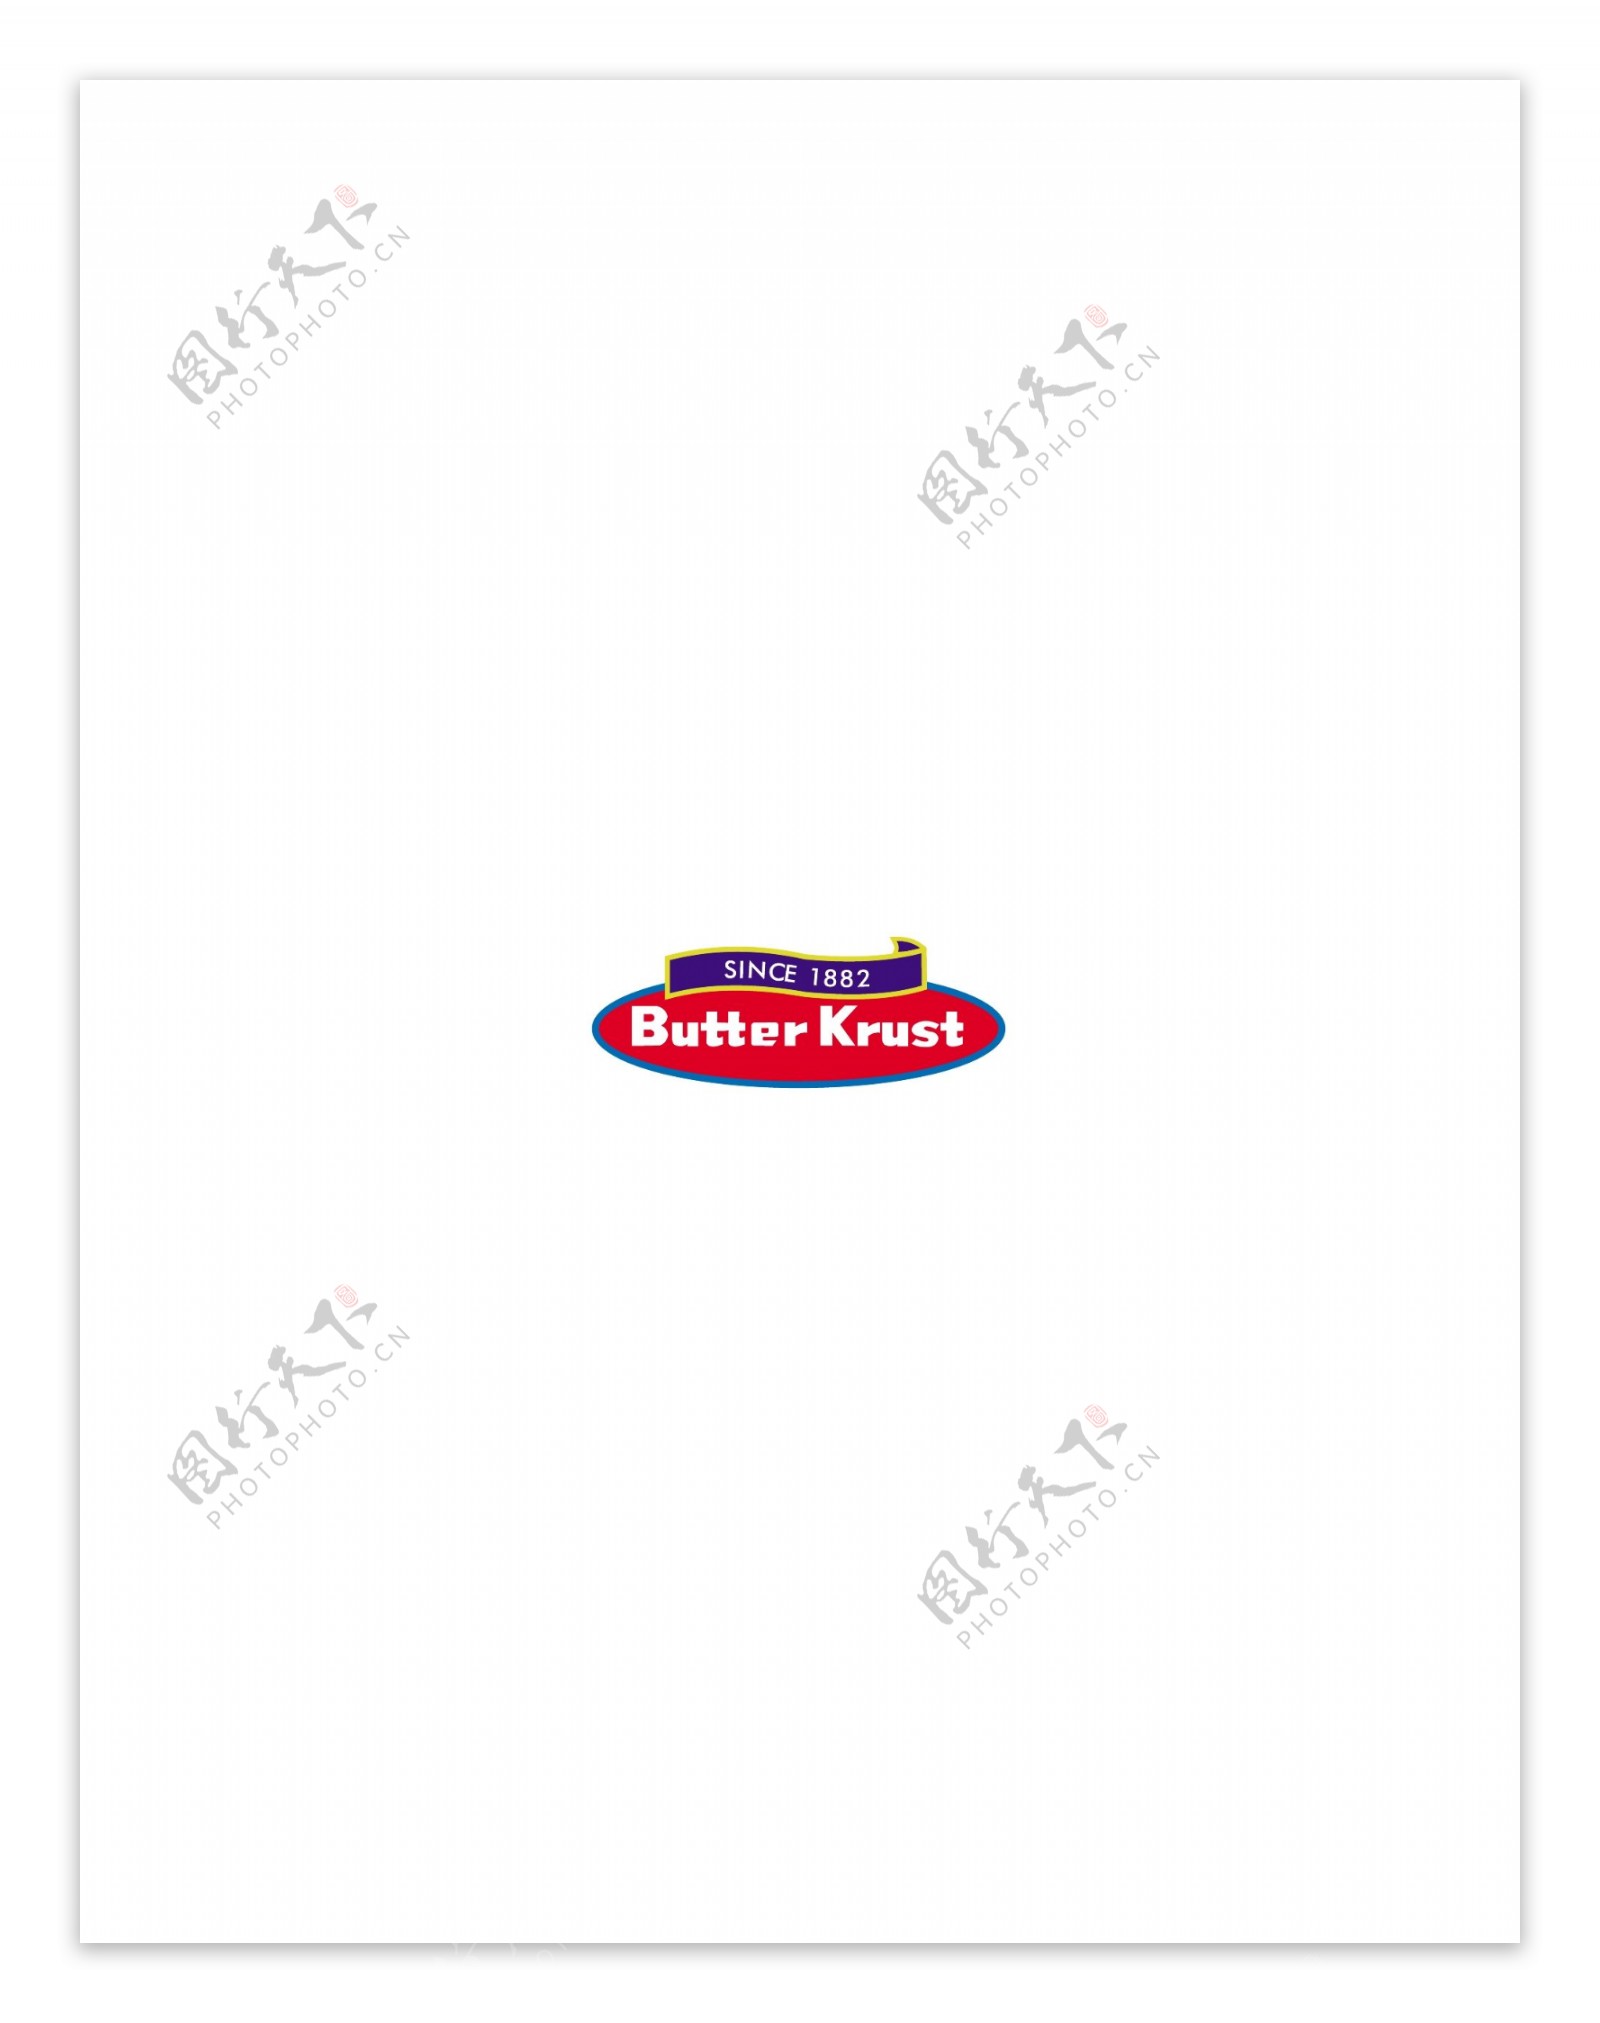 ButterKrustlogo设计欣赏ButterKrust名牌食品标志下载标志设计欣赏